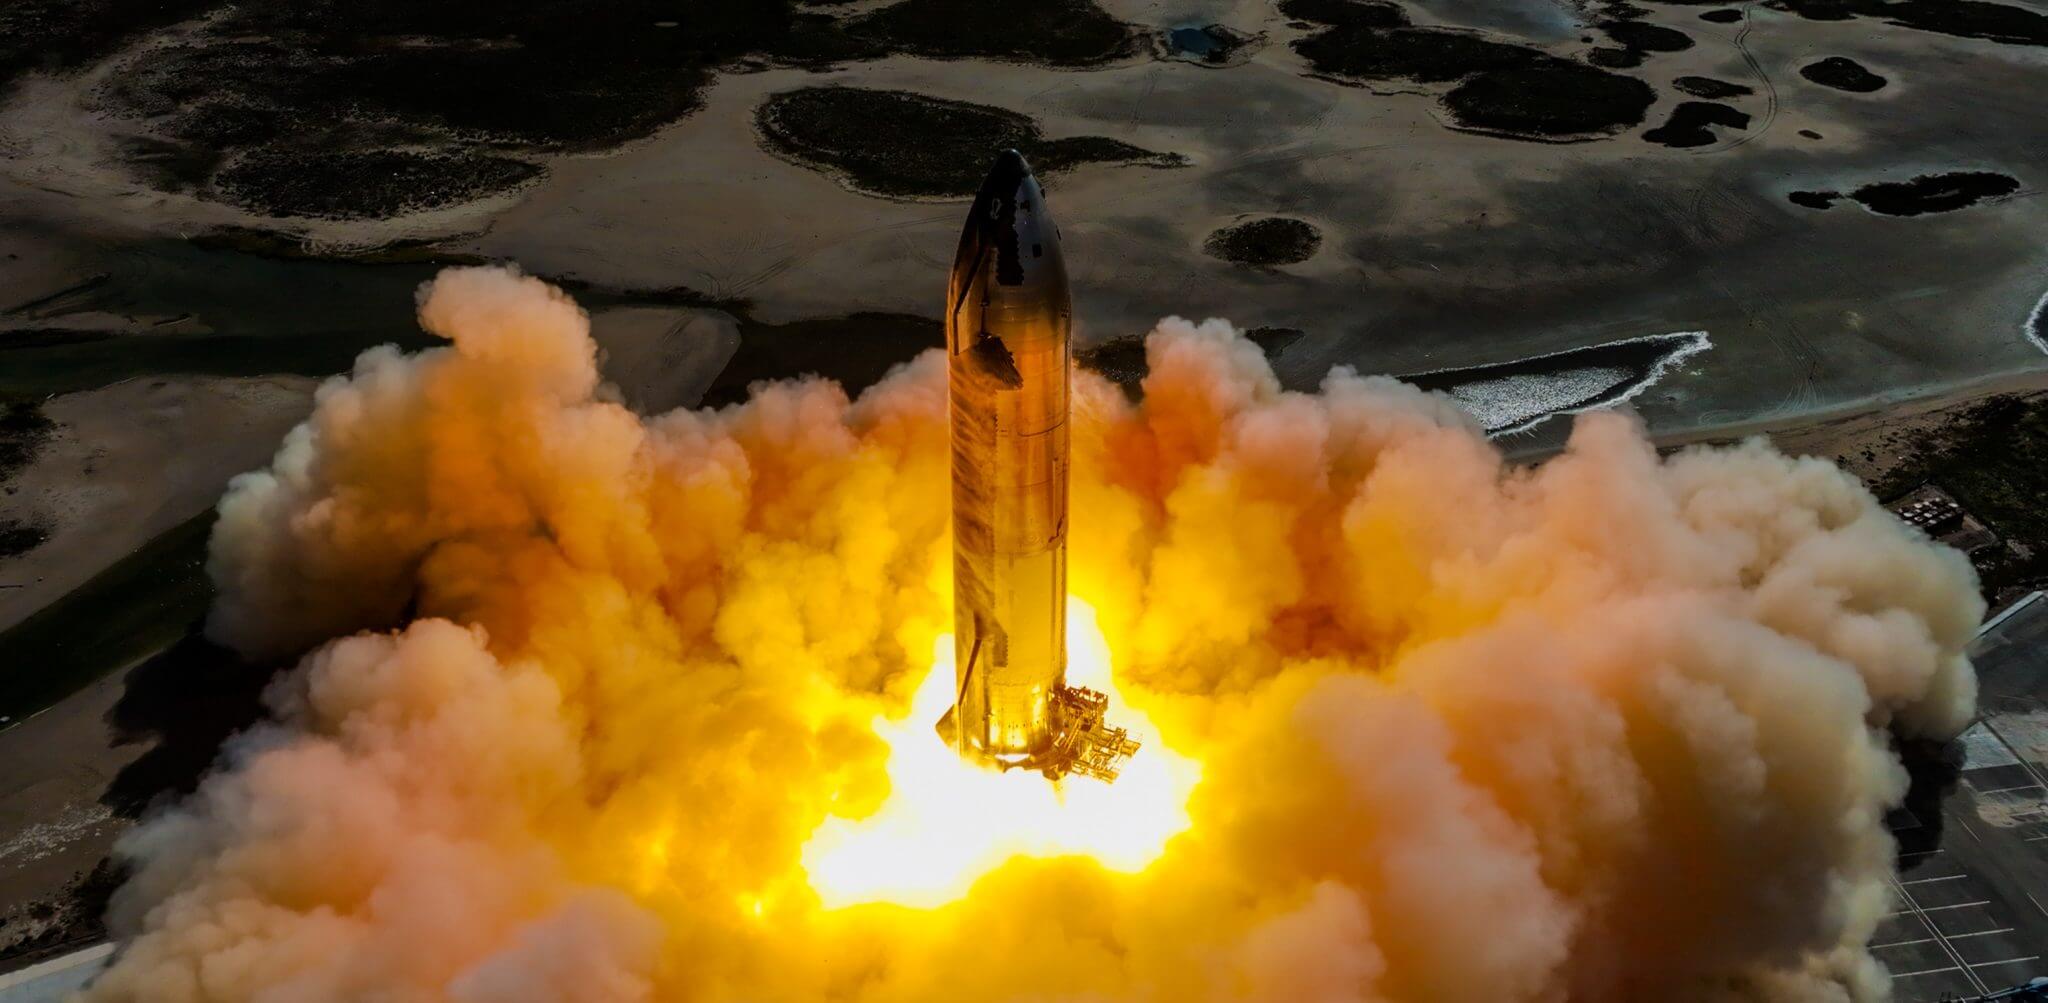 SpaceX 在下一次试飞前启动星际飞船测试